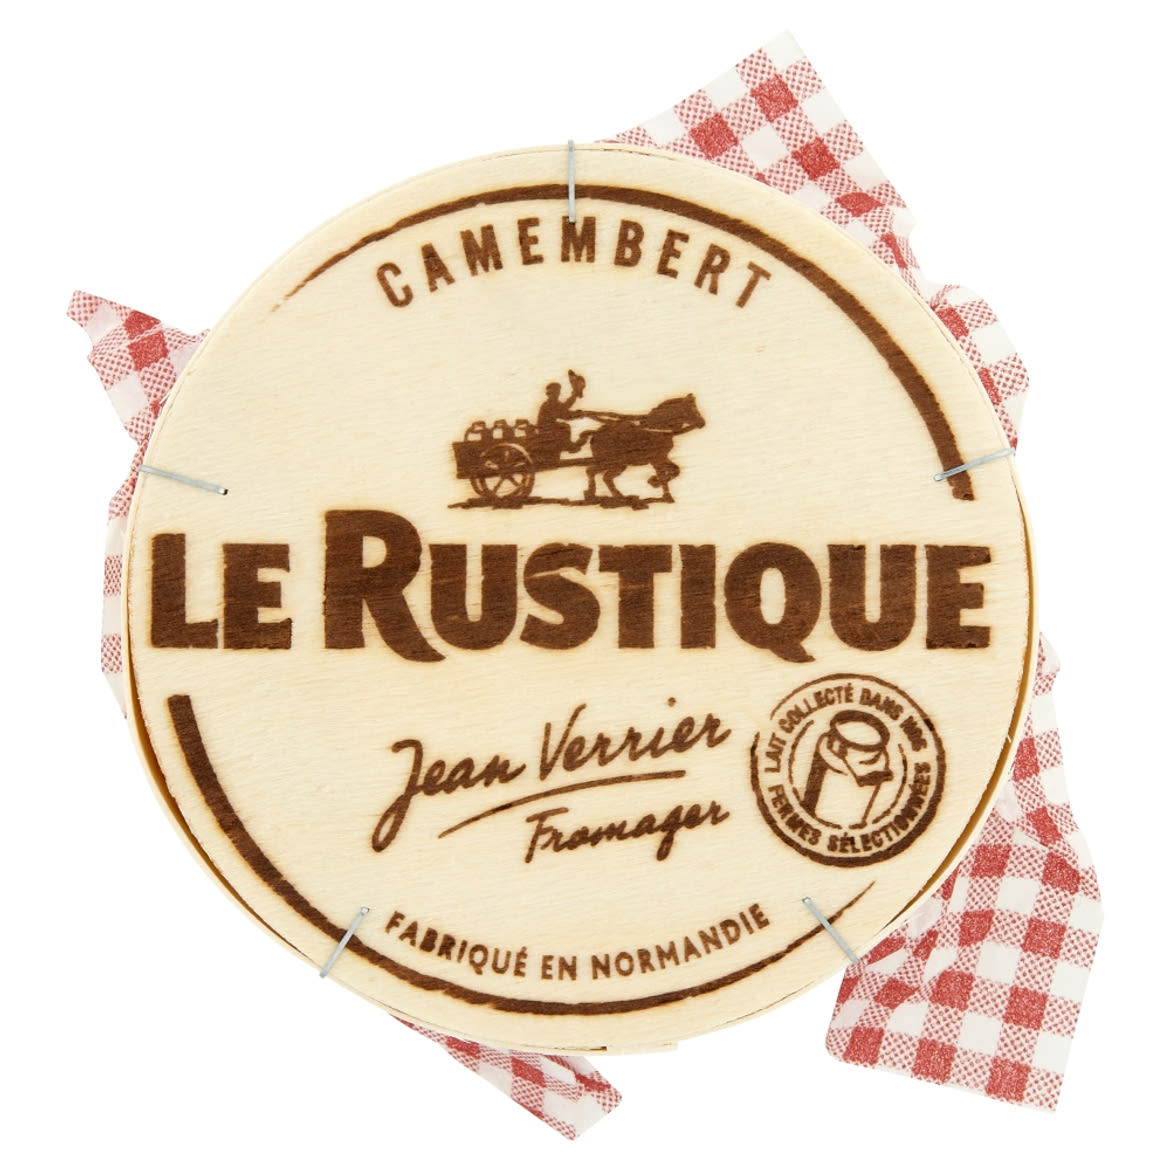 Le Rustique camembert sajt